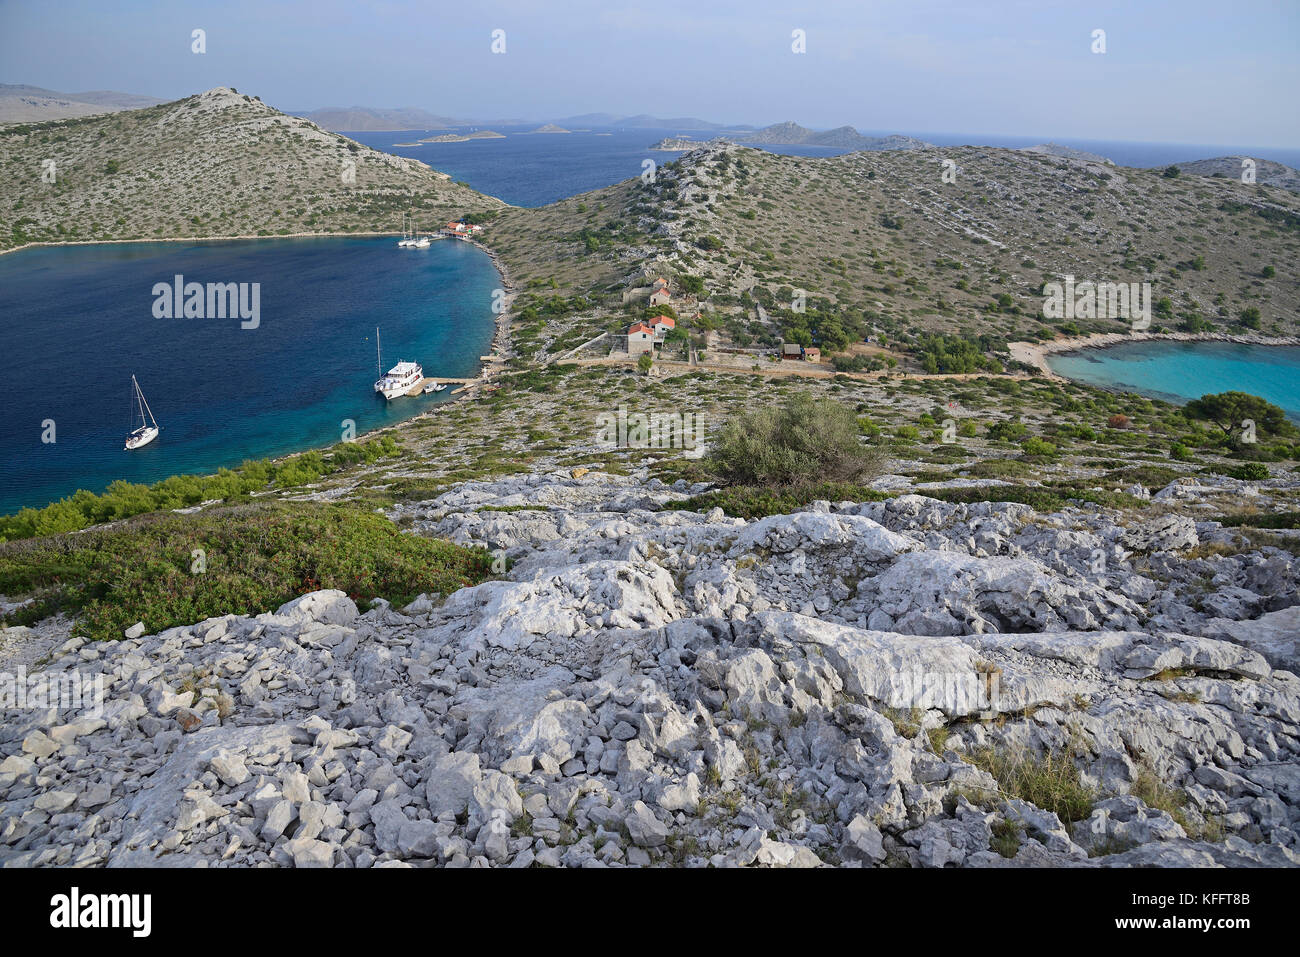 Natürlicher Hafen auf der unbewohnten Insel lebrnaka, Nationalpark Kornati Inseln, Adria, Mittelmeer, Dalmatien, Kroatien Stockfoto